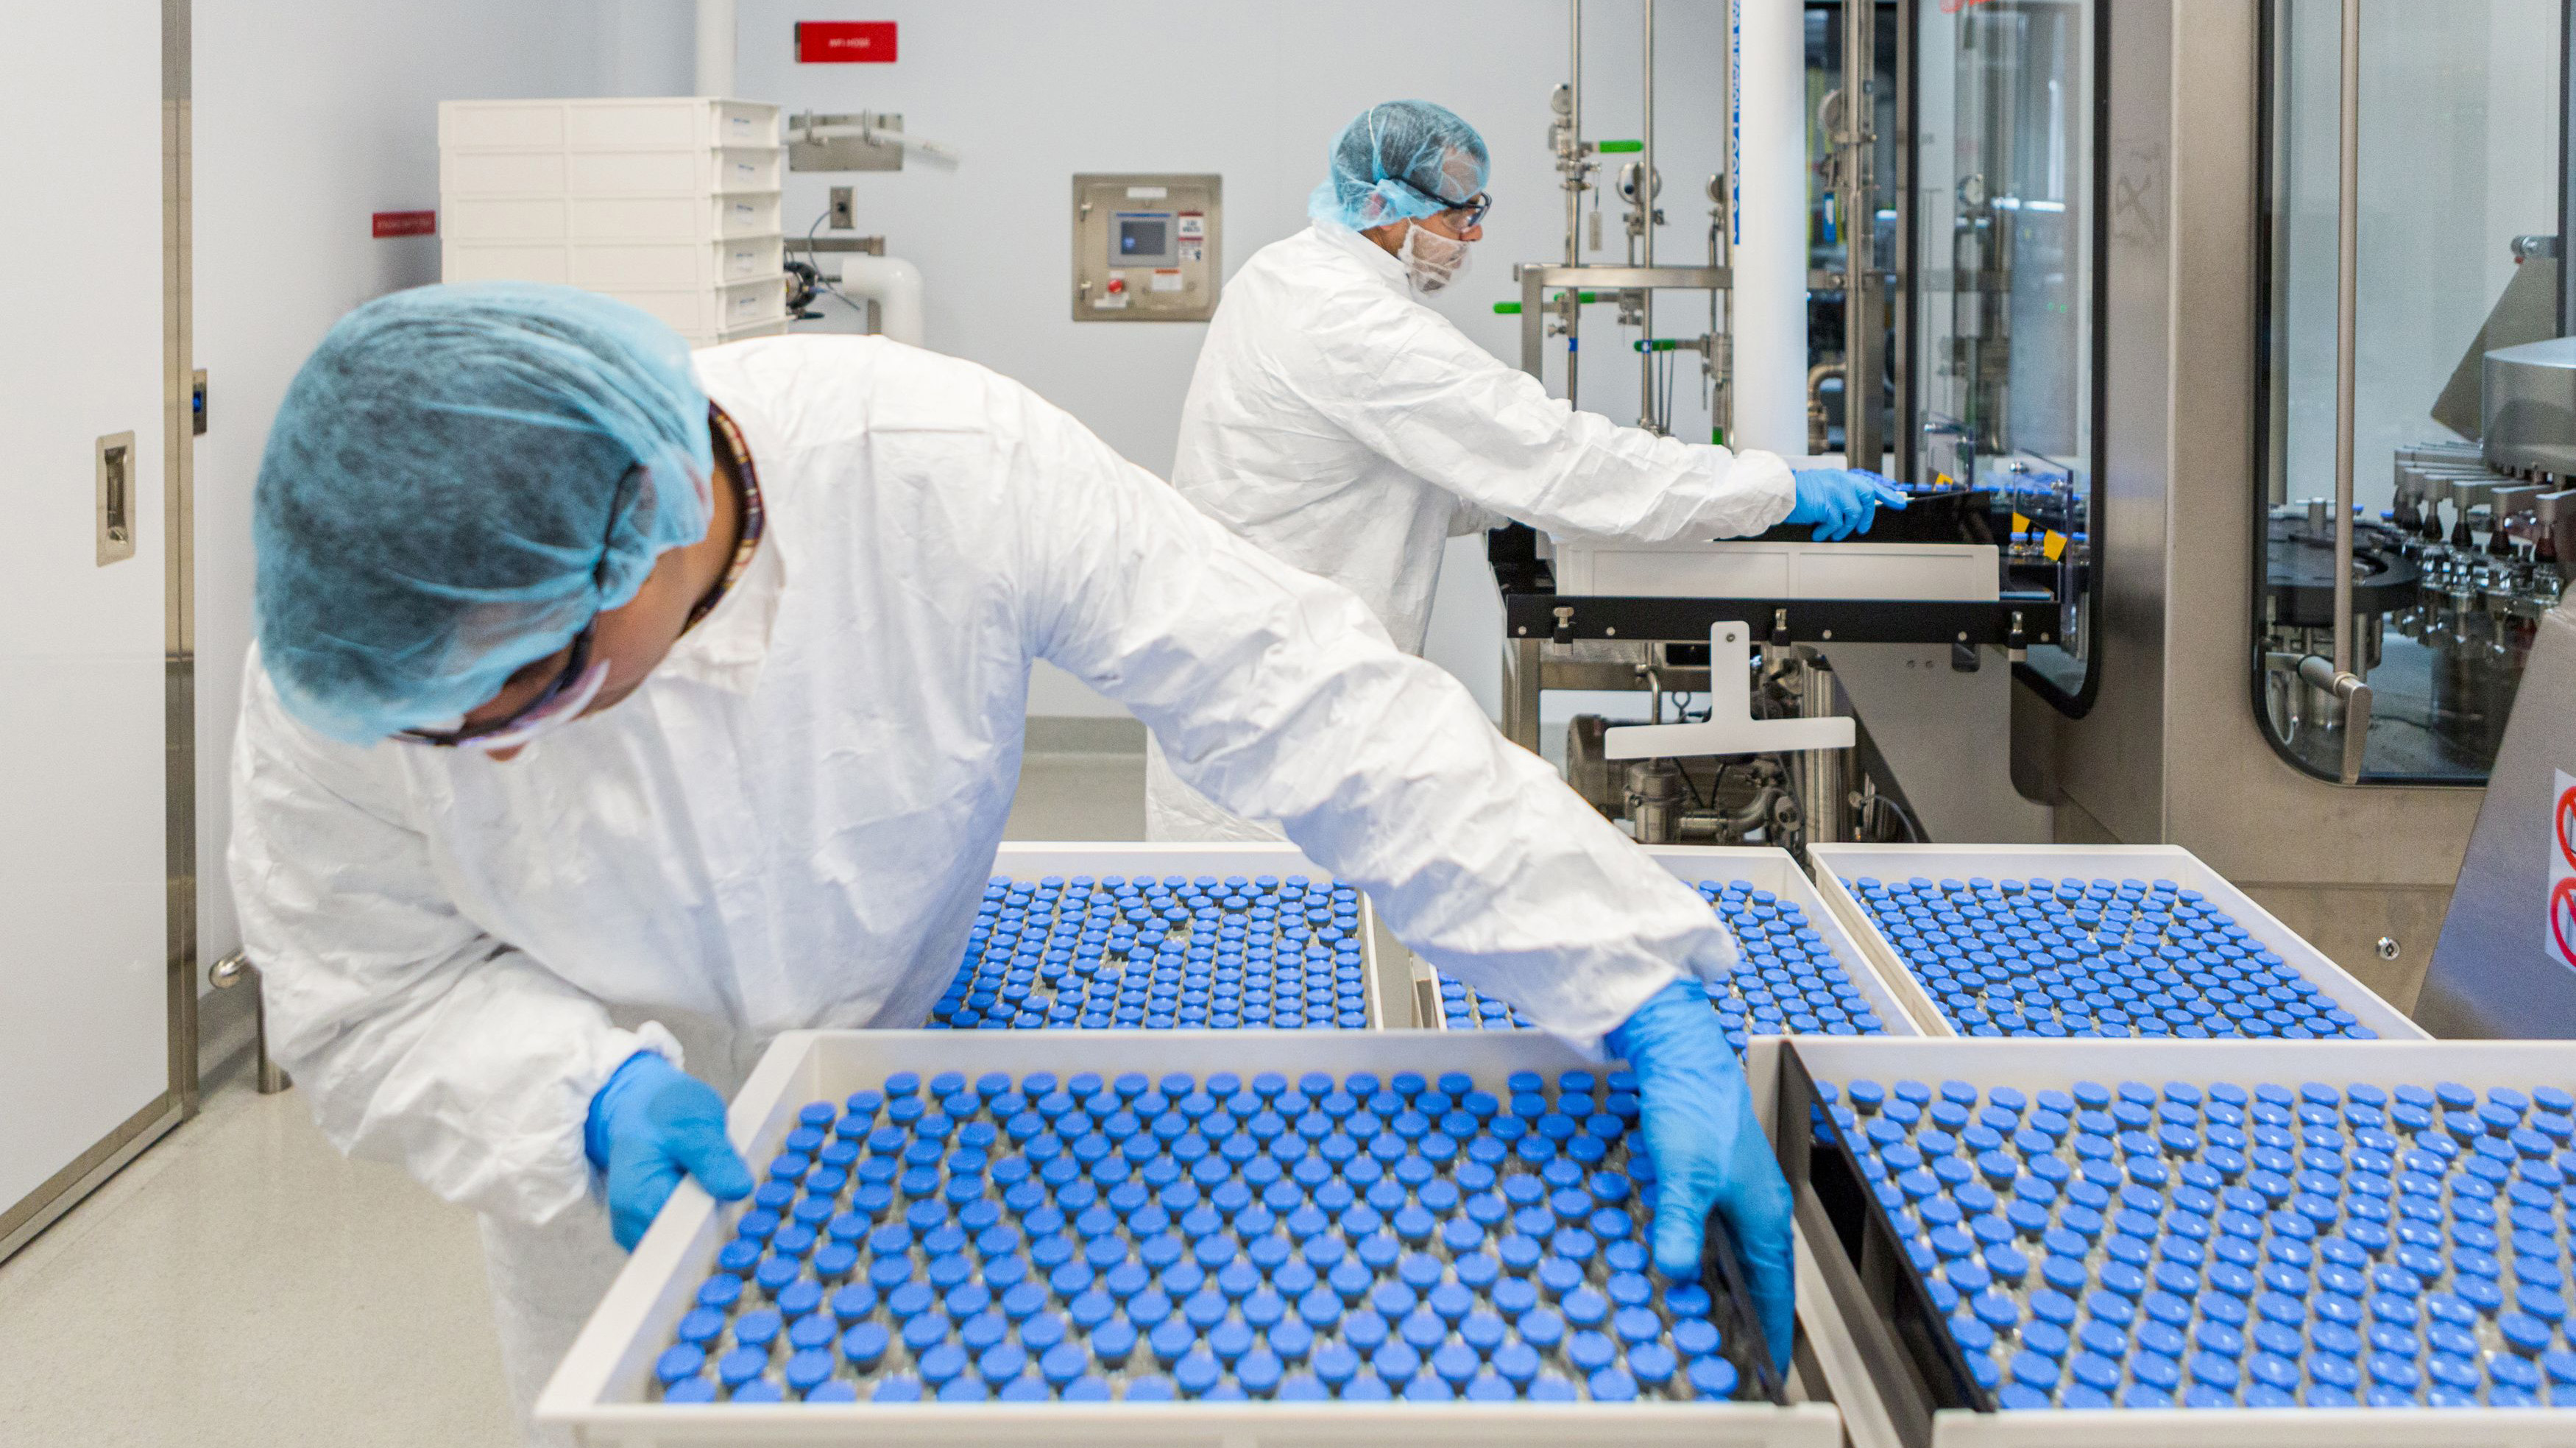 Técnicos de laboratorio cargan frascos llenos de remdesivir en una instalación de Gilead Sciences en La Verne, California, el 18 de marzo de 2020 (Gilead Sciences Inc/Handout via REUTERS)